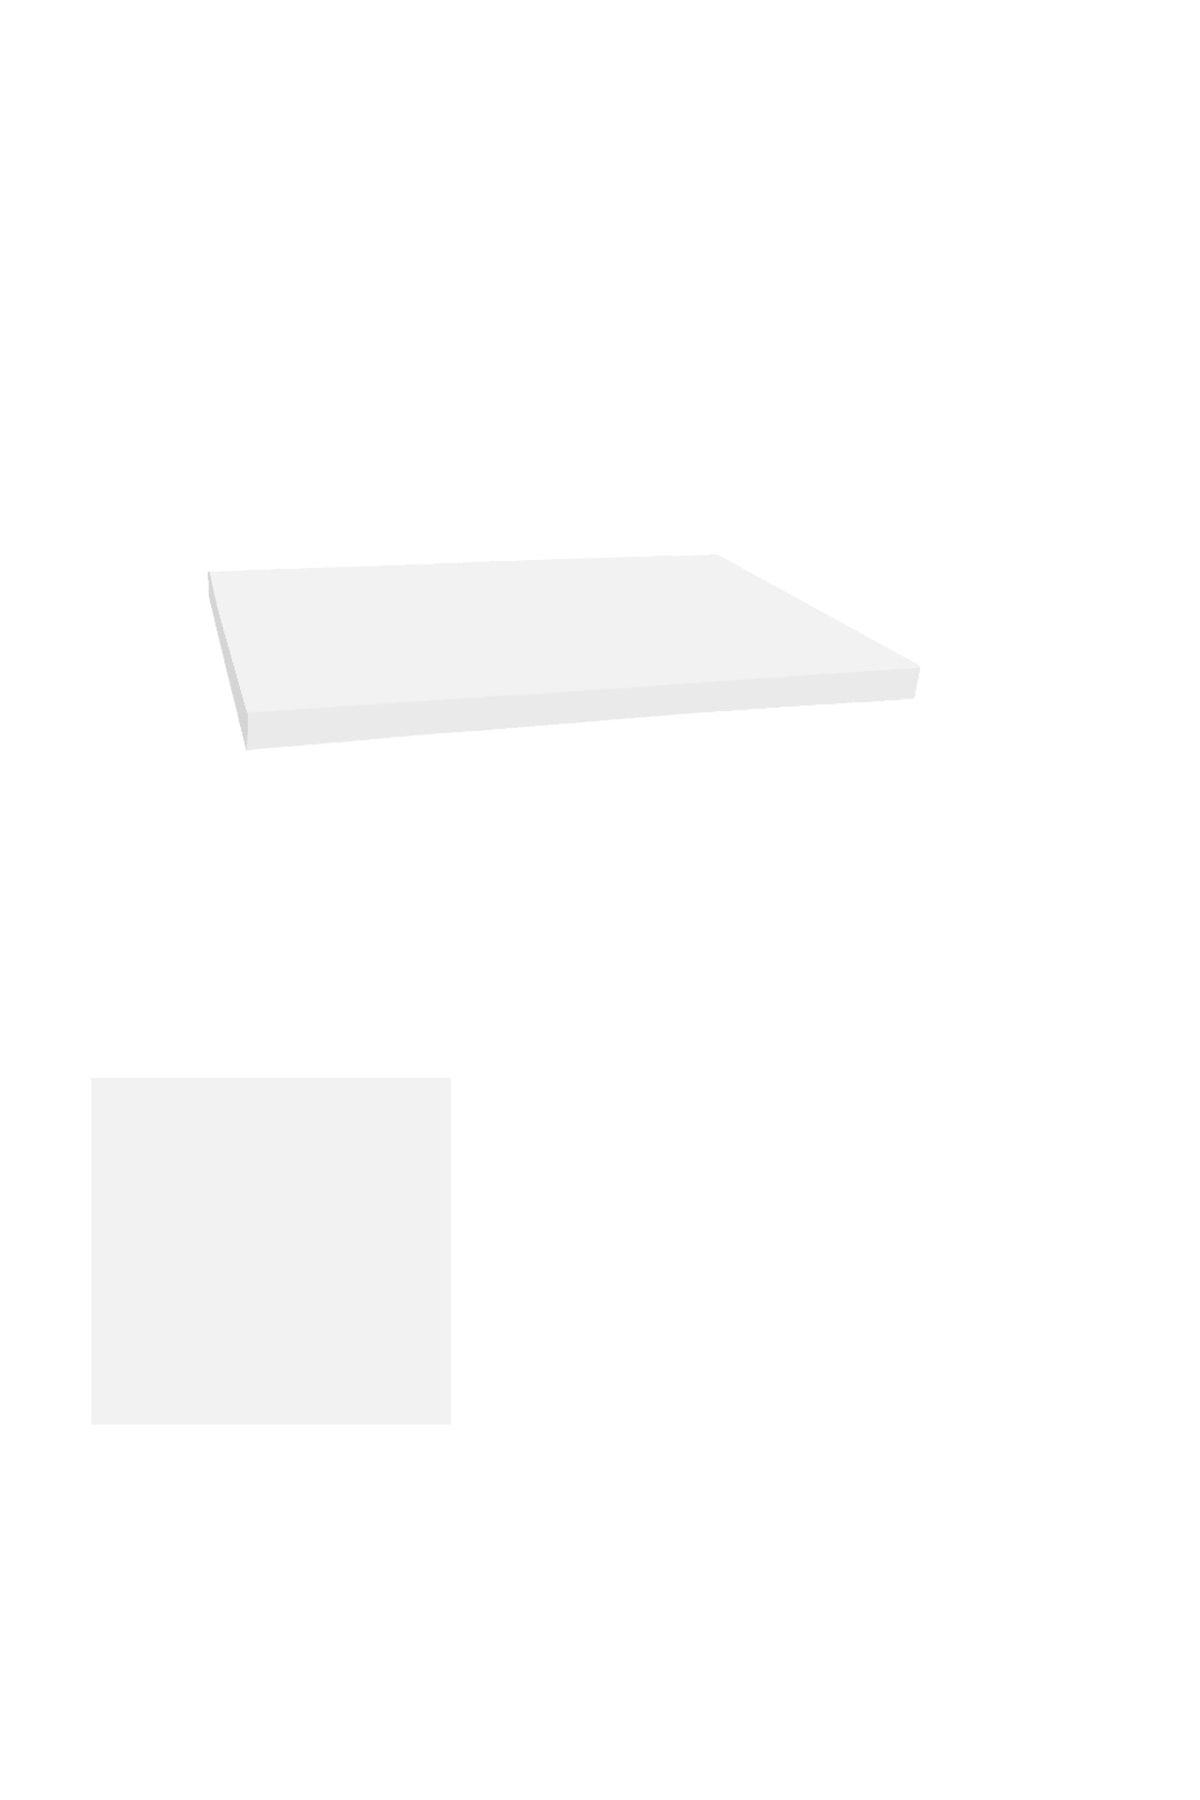 Dockers Laminat Masa Tablası (110x110) - Beyaz